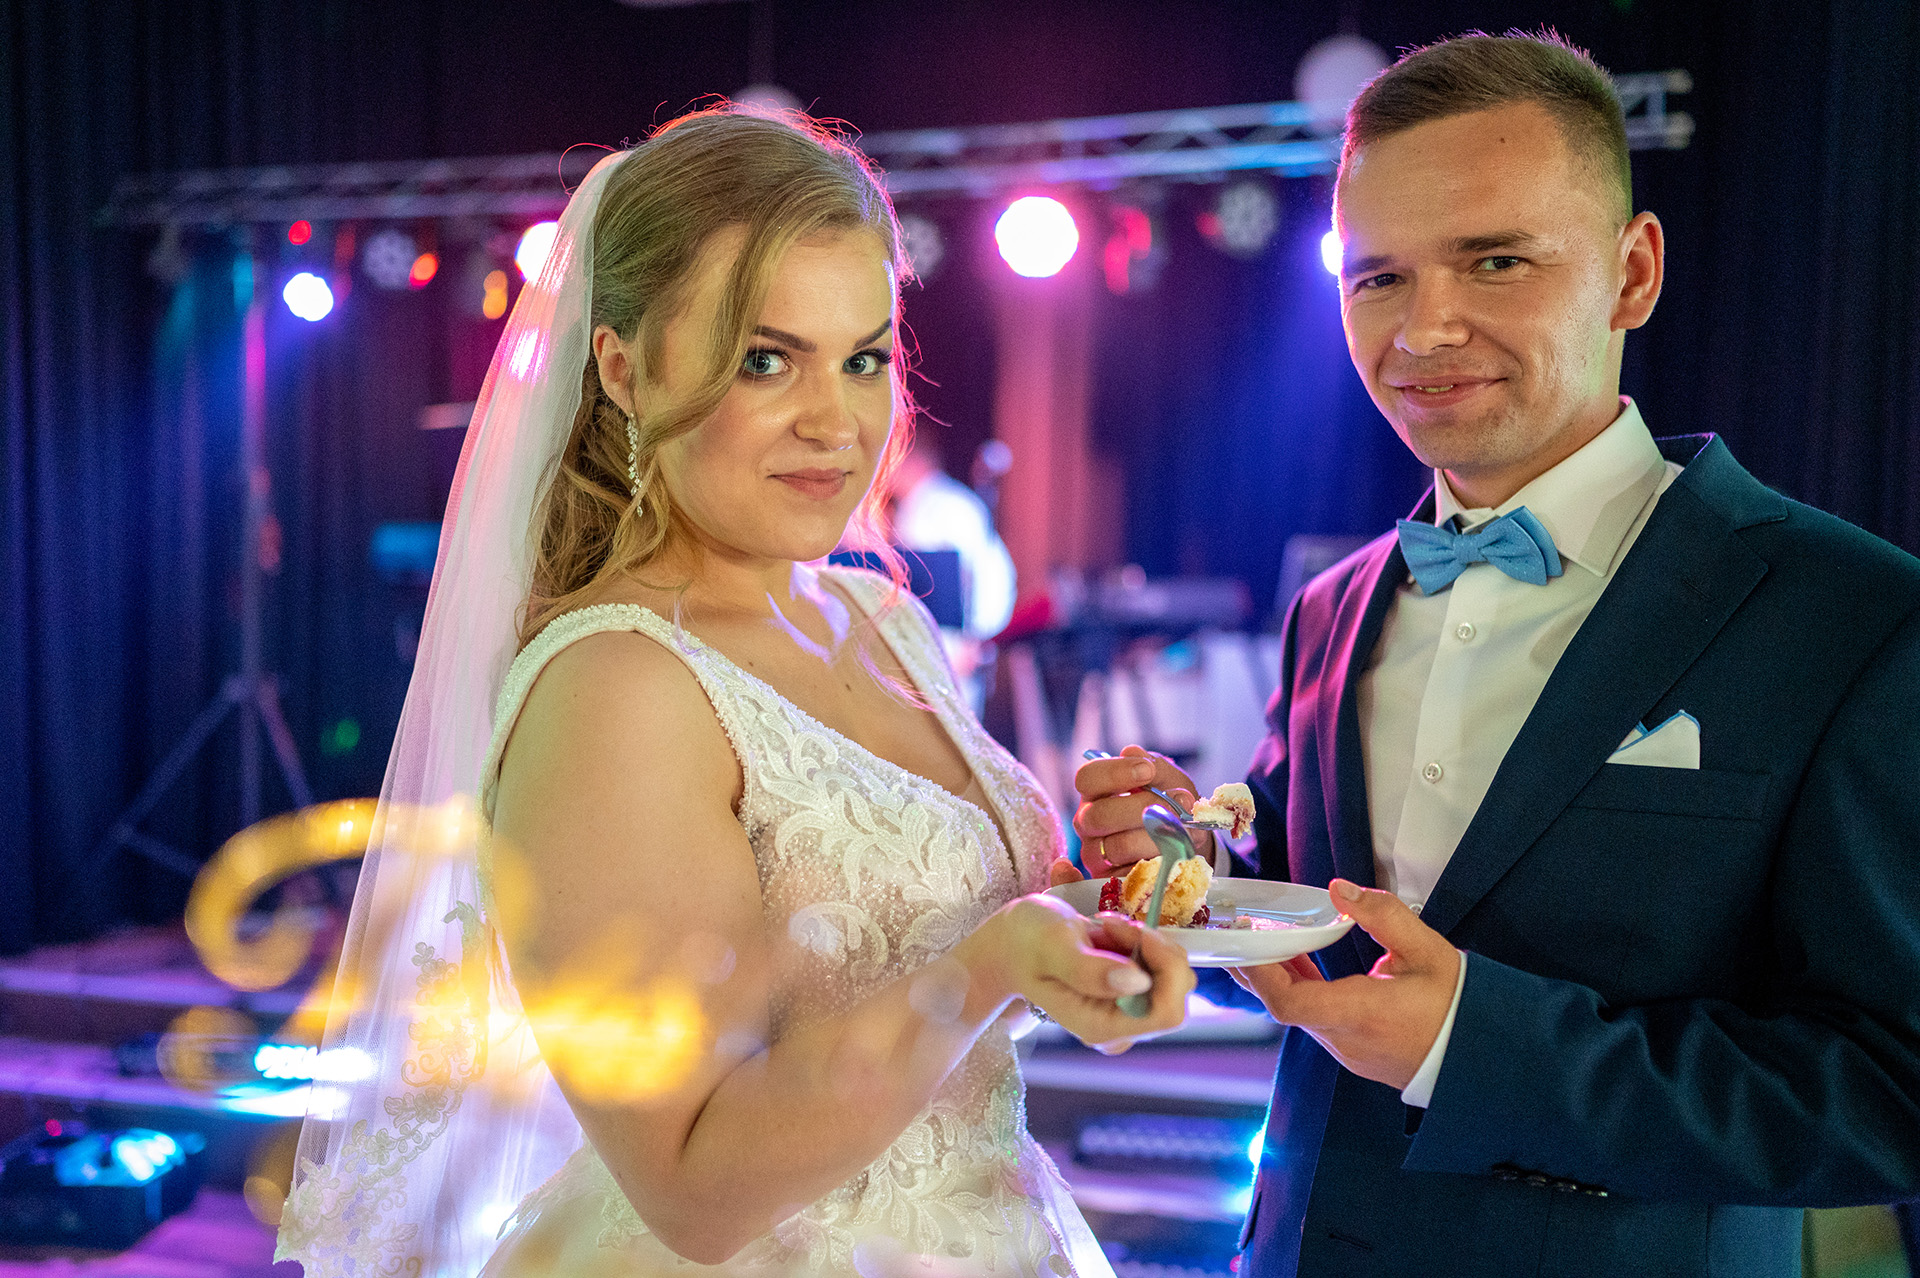 wesele - fotograf ślubny - fotografia ślubna - zdjecia podczas wesela